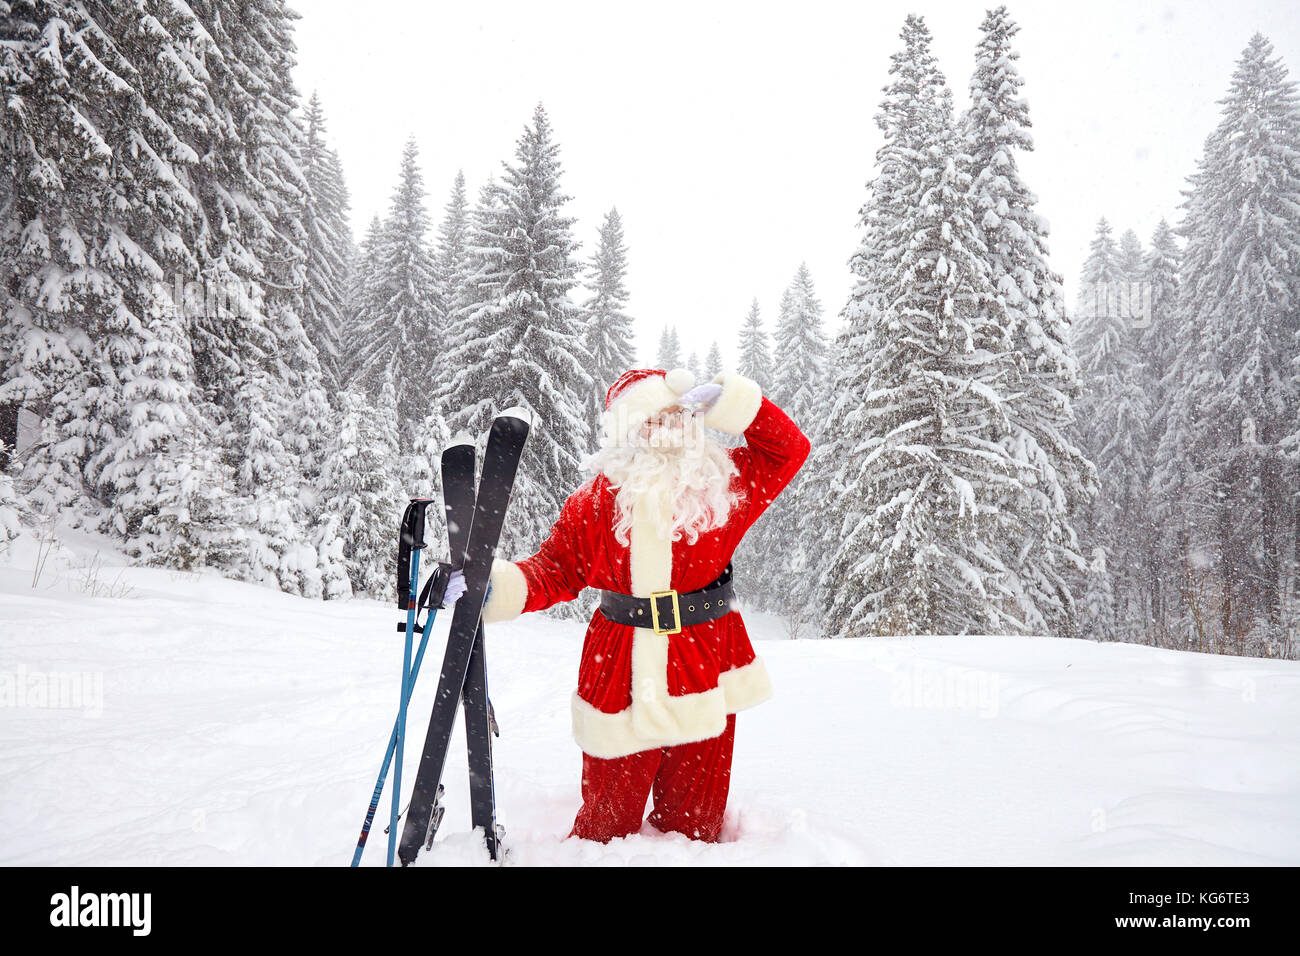 Santa claus Skifahrer mit Ski in den Wäldern im Winter zu Weihnachten  Stockfotografie - Alamy